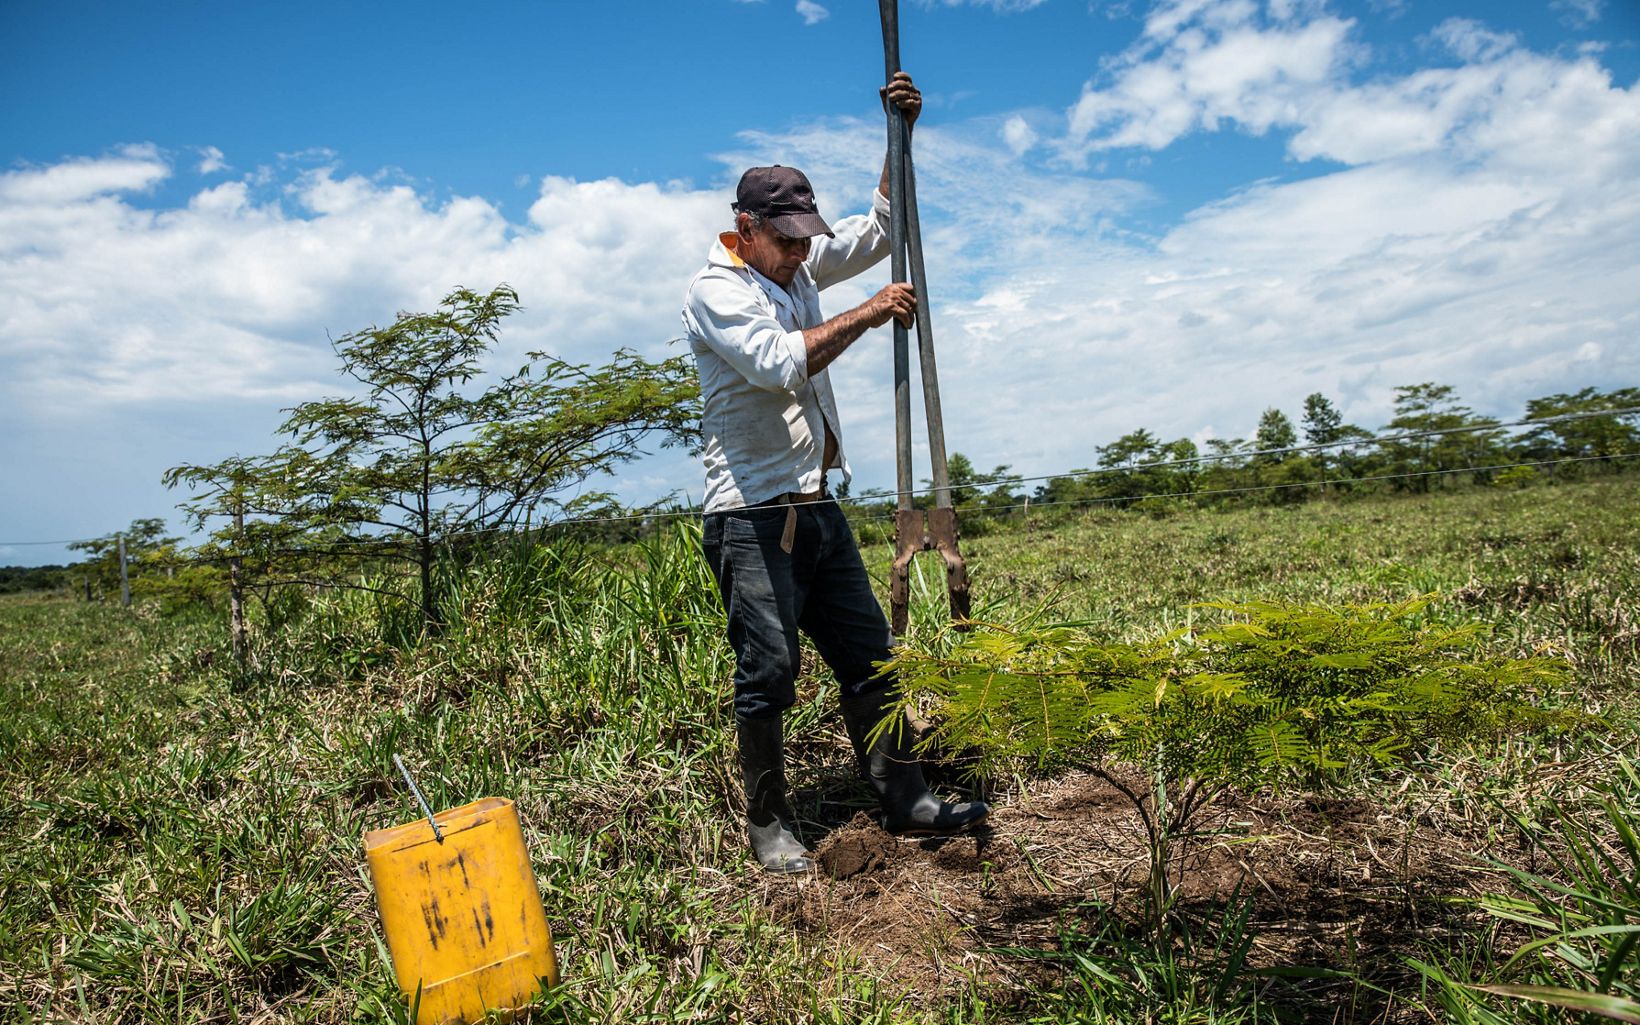 Paso a paso La primera medida de Edilson fue plantar cercas vivas, uno de los arreglos de sistemas silvopastoriles diseñados para proteger el ganado. Los resultados fueron muy exitosos. © TNC Colombia